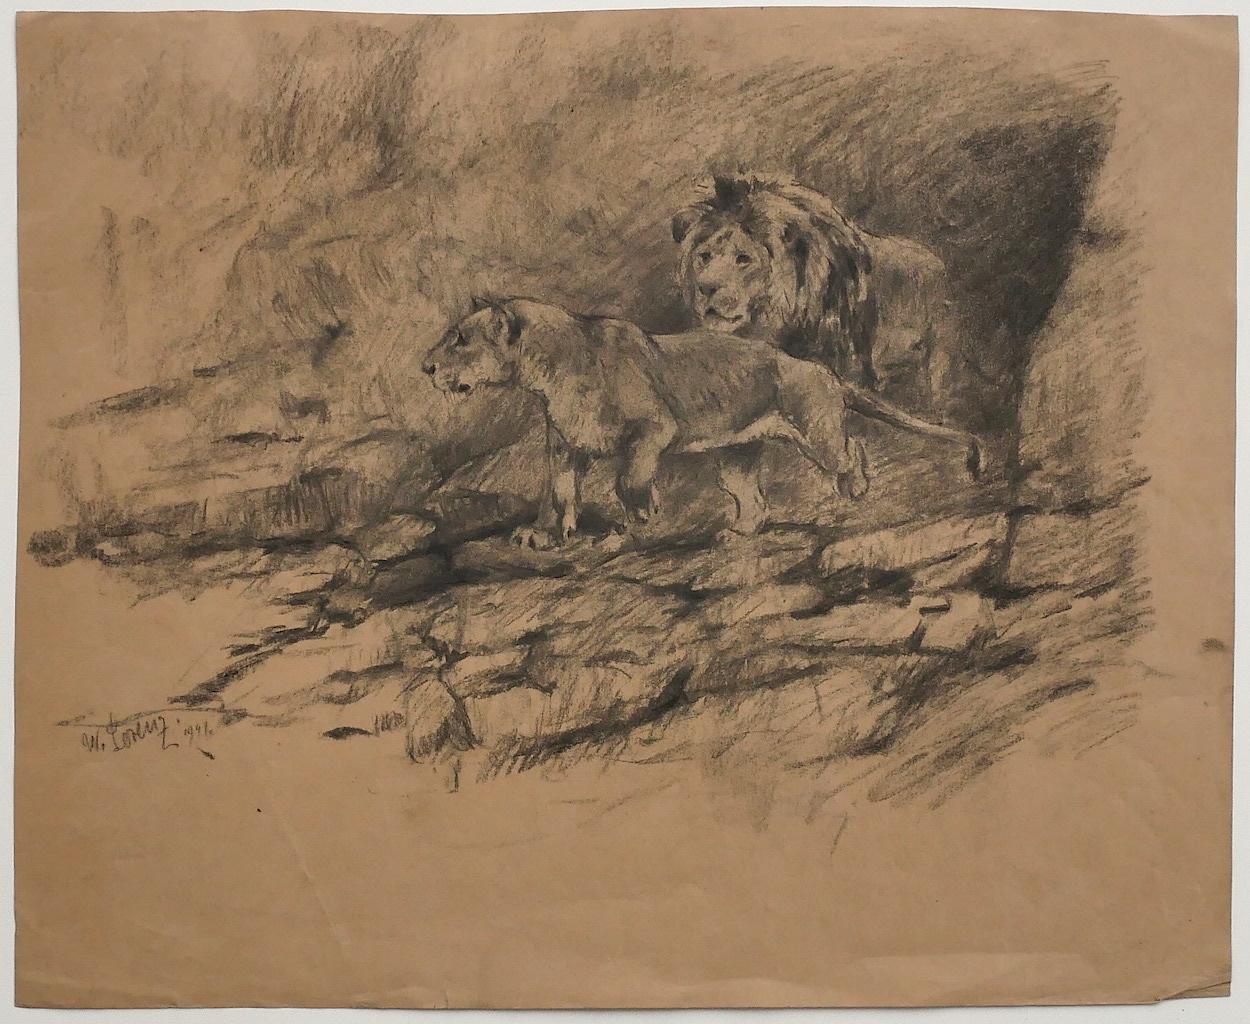 Lions est un dessin original au crayon de Willy Lorenz en 1947.

Signé à la main en bas à gauche et daté.

L'état de conservation est très bon sauf pour quelques pliures.

Dimension de la feuille : 34 x 41,5 cm

L'œuvre représente un paysage de deux